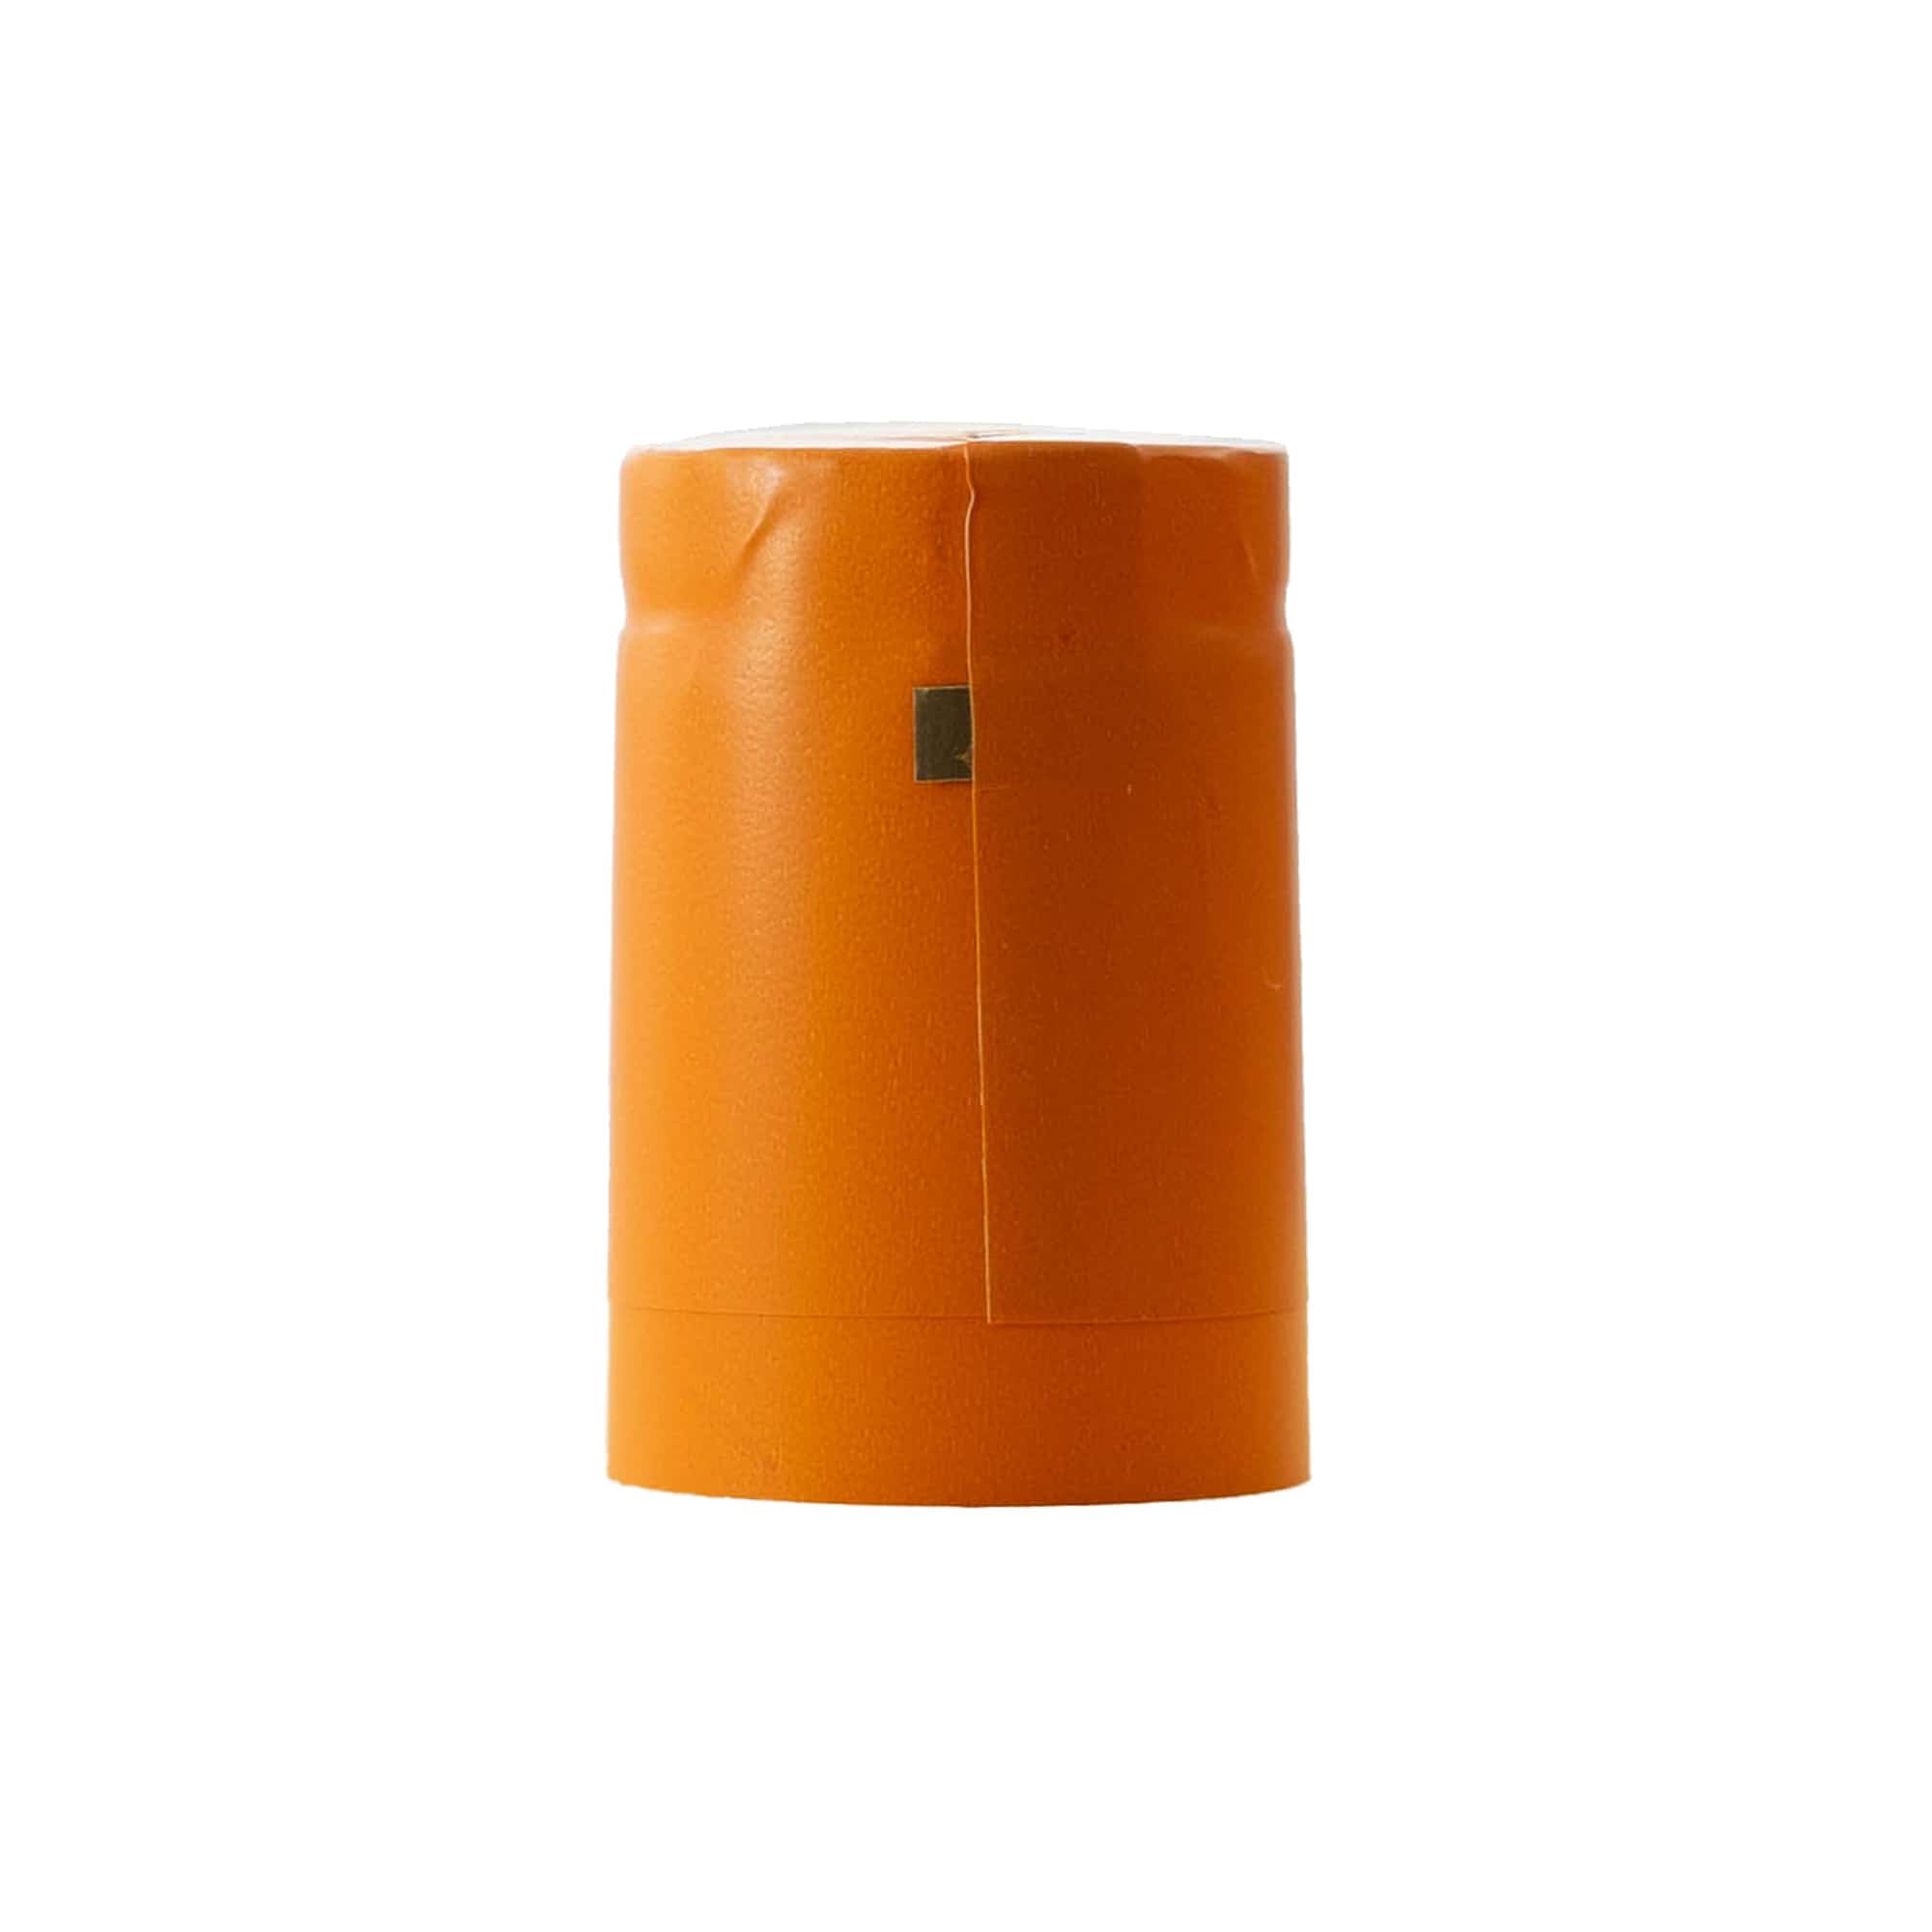 Schrumpfkapsel 32x41, PVC-Kunststoff, orange